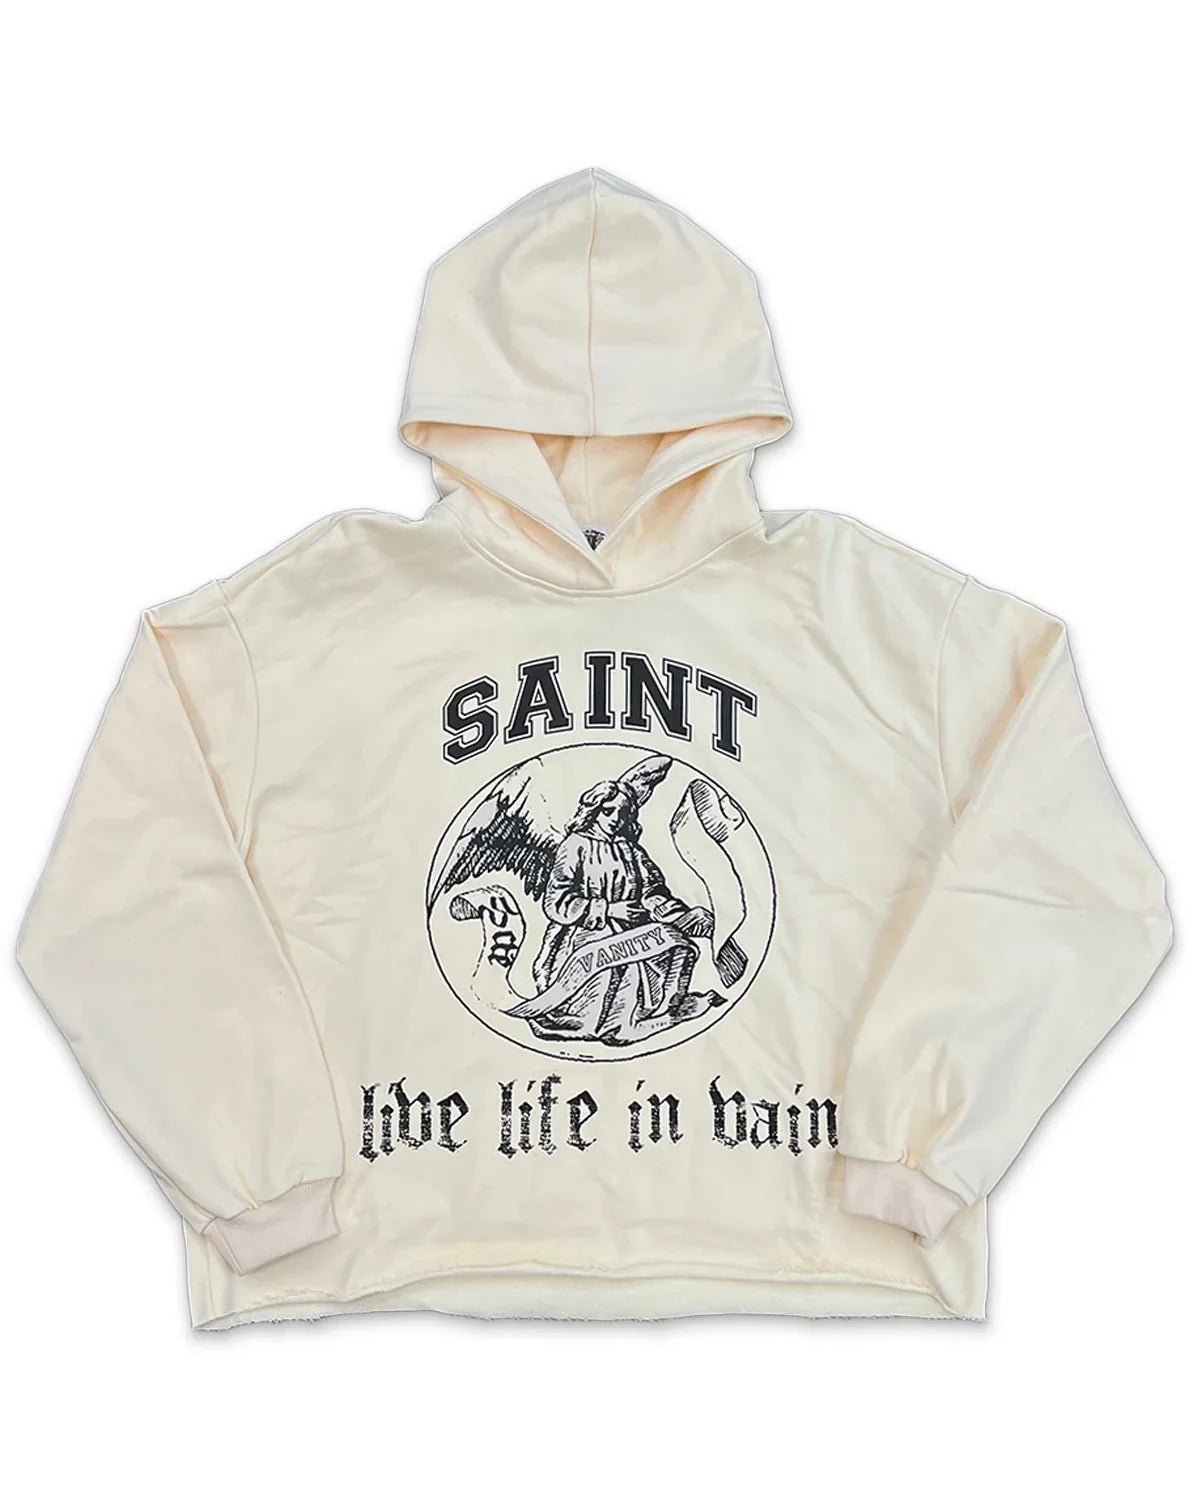 Saint Vanity Live Life In Vain hoodie cream